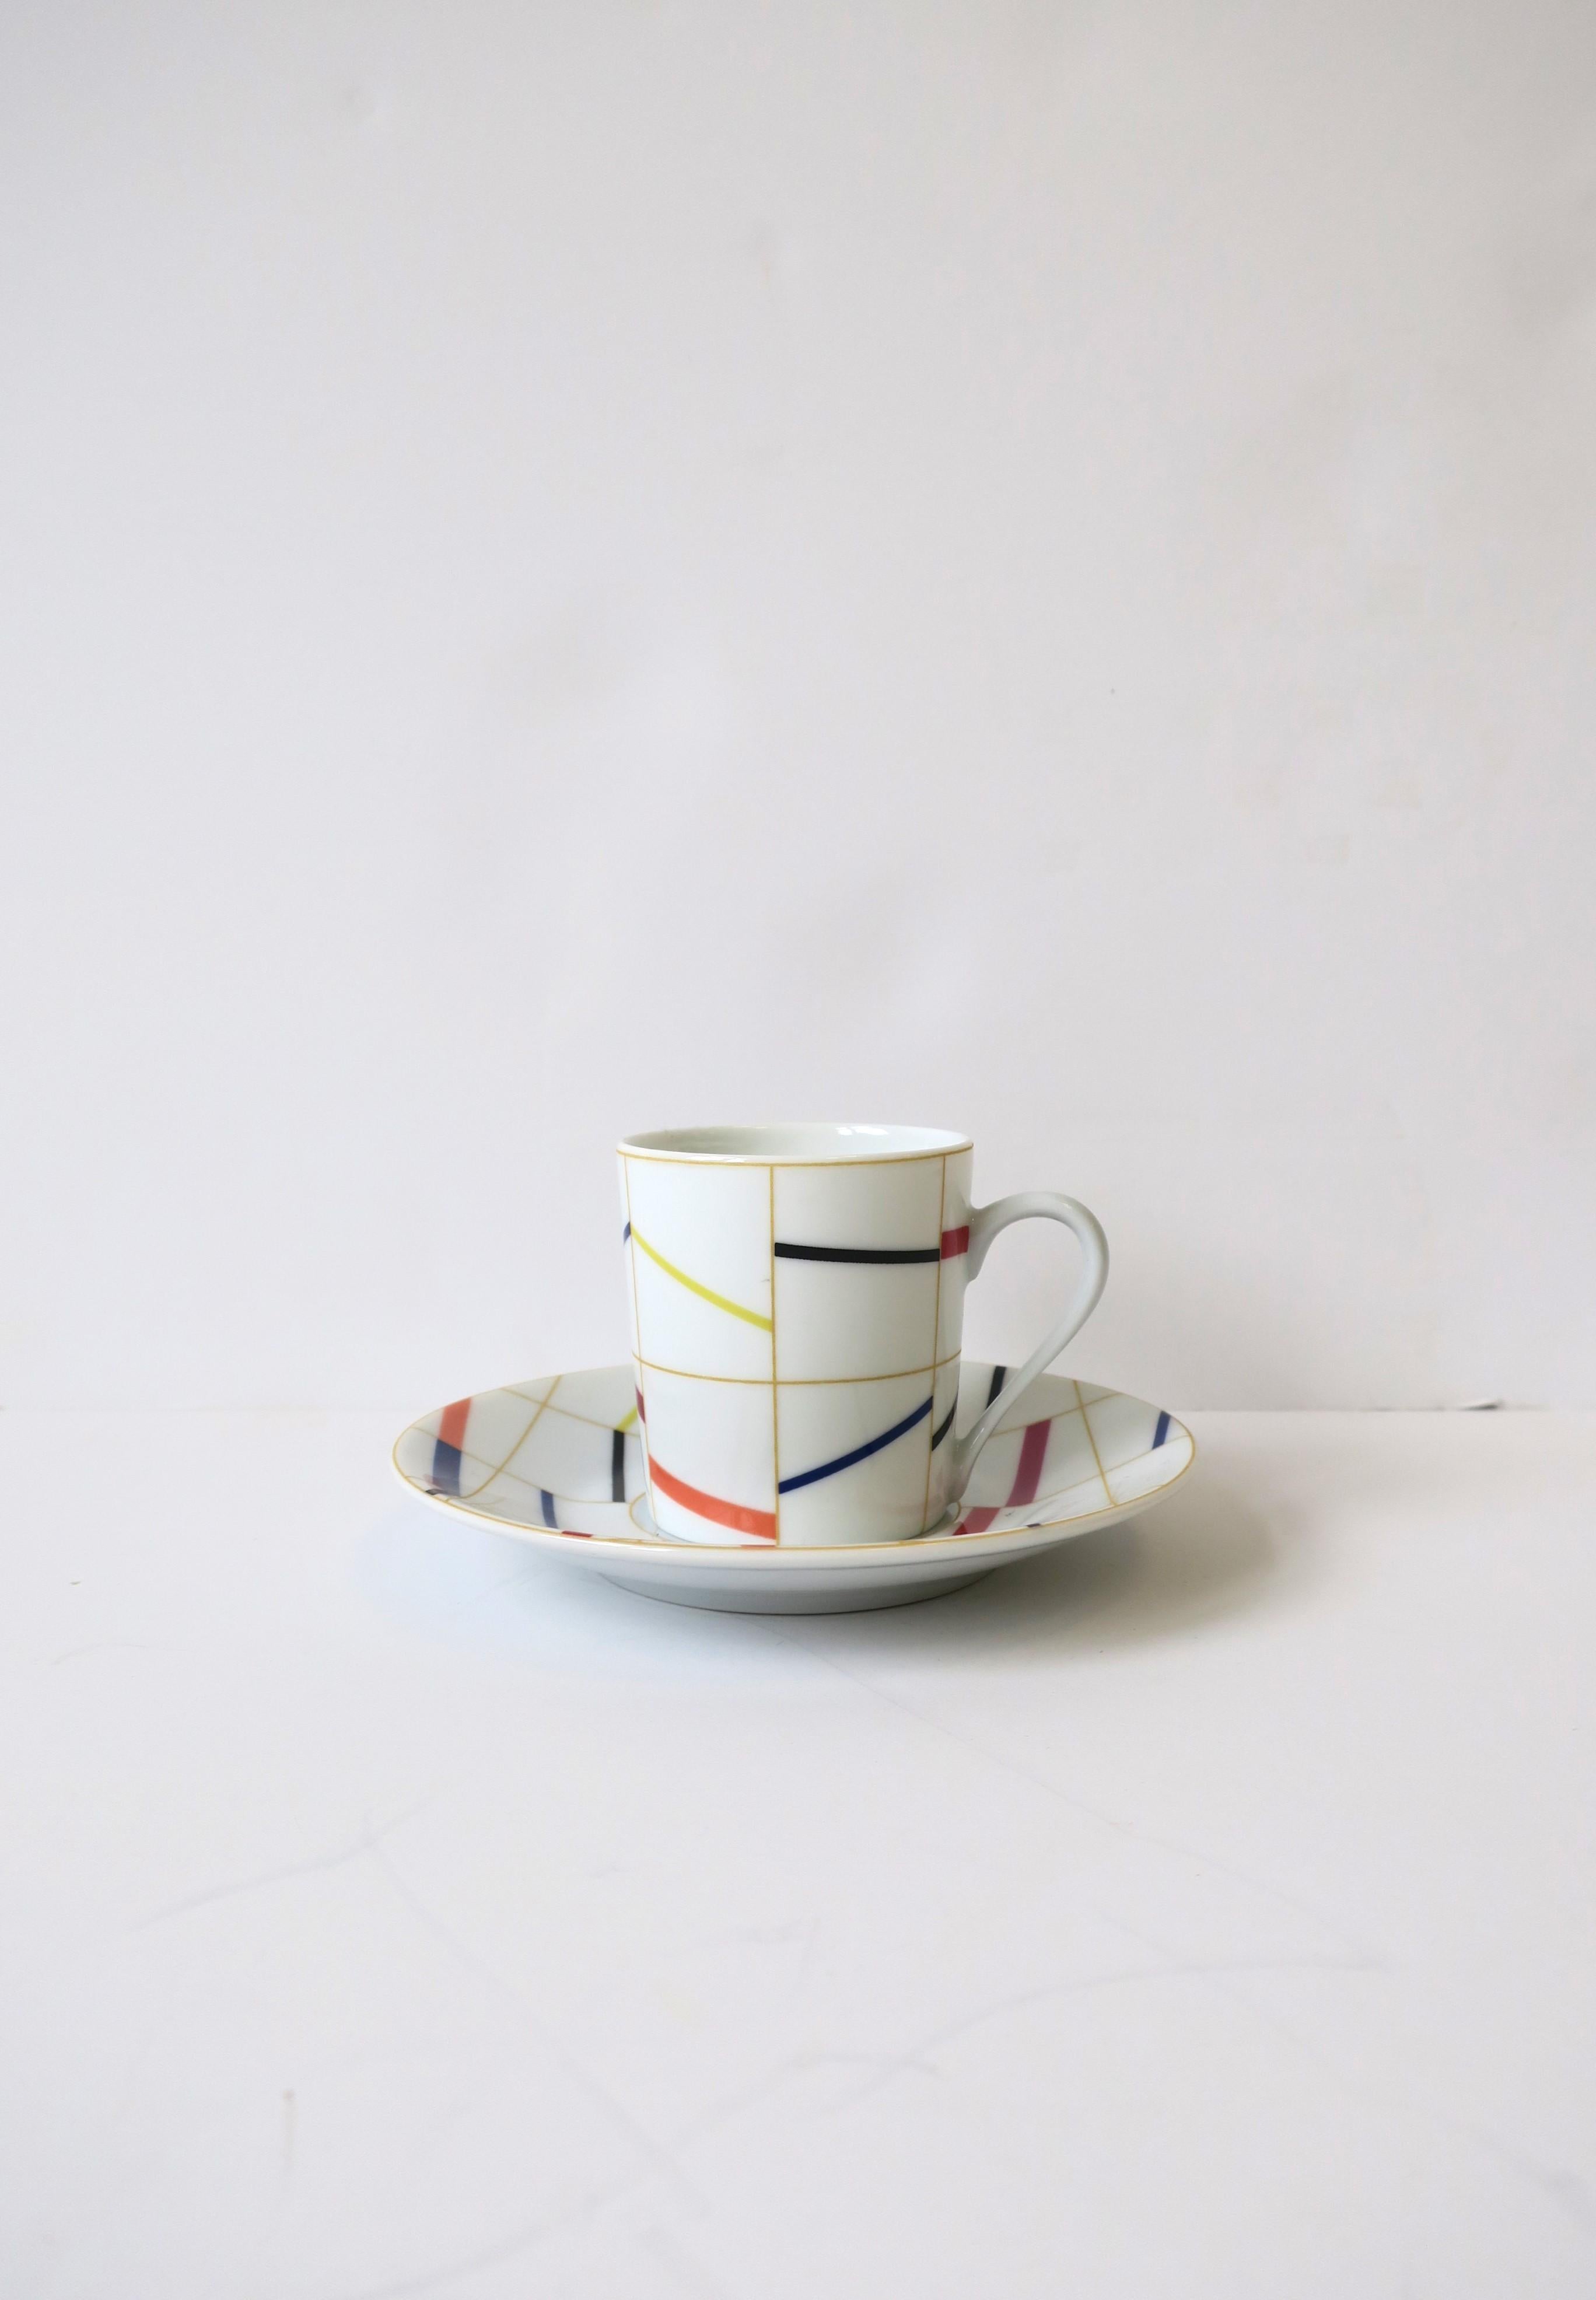 Une belle tasse à café ou thé expresso et une soucoupe en porcelaine française avec un design abstrait coloré, vers la fin du 20e siècle, France. Marqué sur le fond comme indiqué. 

Le seau à glace en verre noir français illustré est disponible